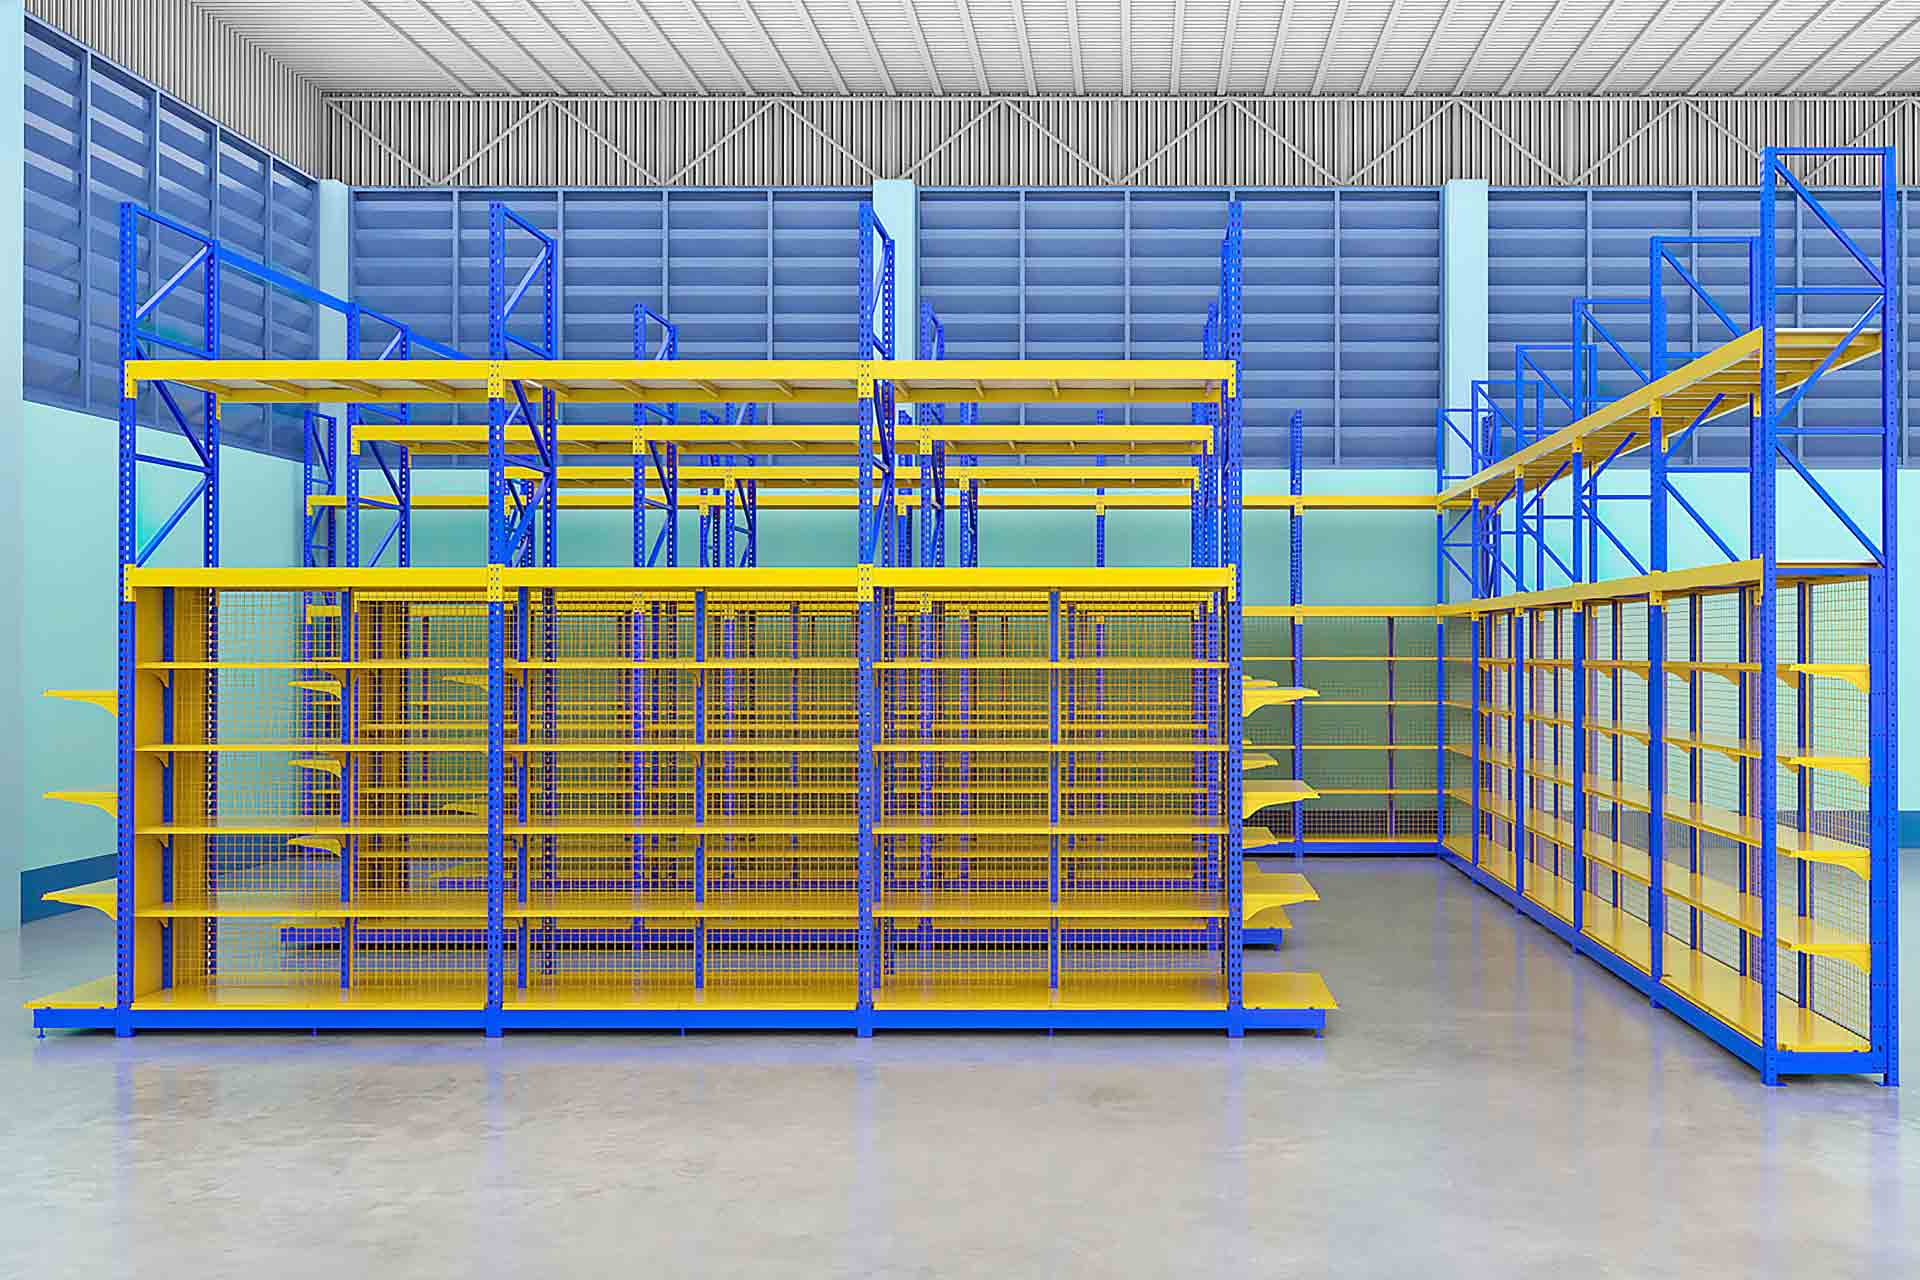 ออกแบบชั้นวางสินค้า 3D สีน้ำเงิน-เหลือง ร้านคุณธรรมรงค์